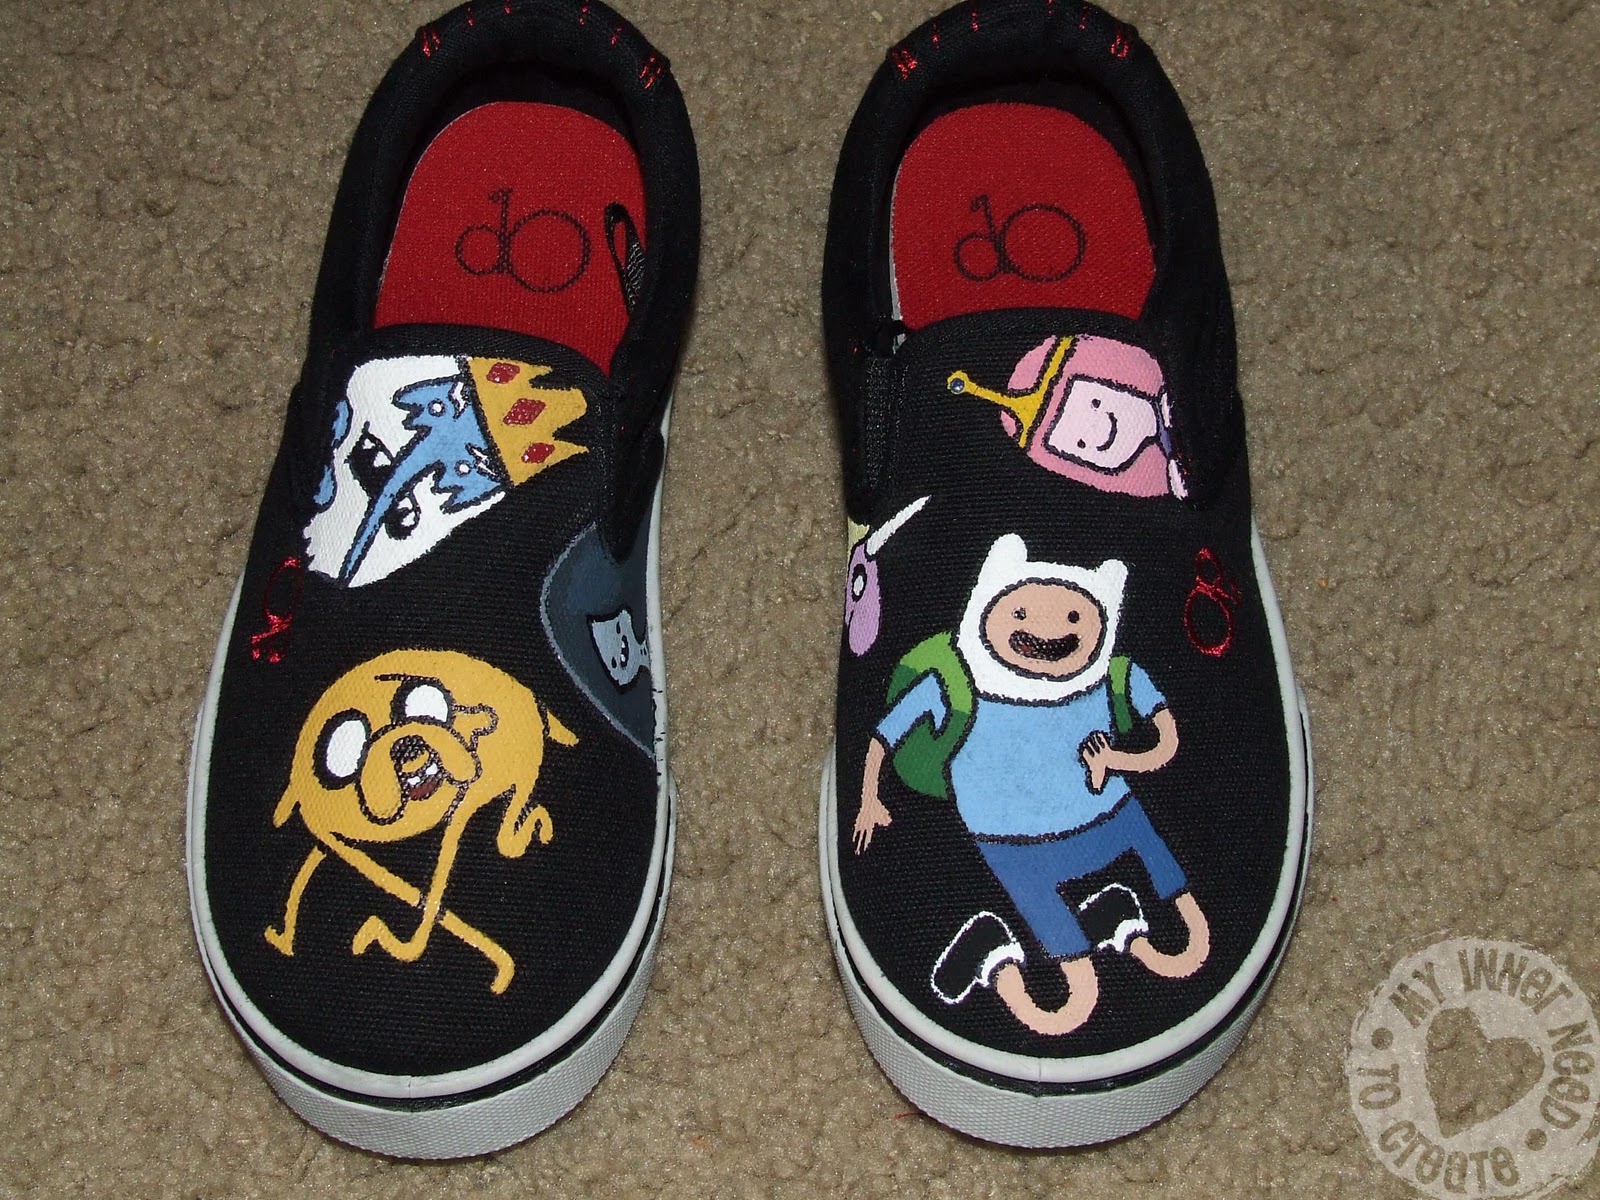 Middellandse Zee Nieuwjaar zoom My Inner Need to Create...: Adventure Time Shoes